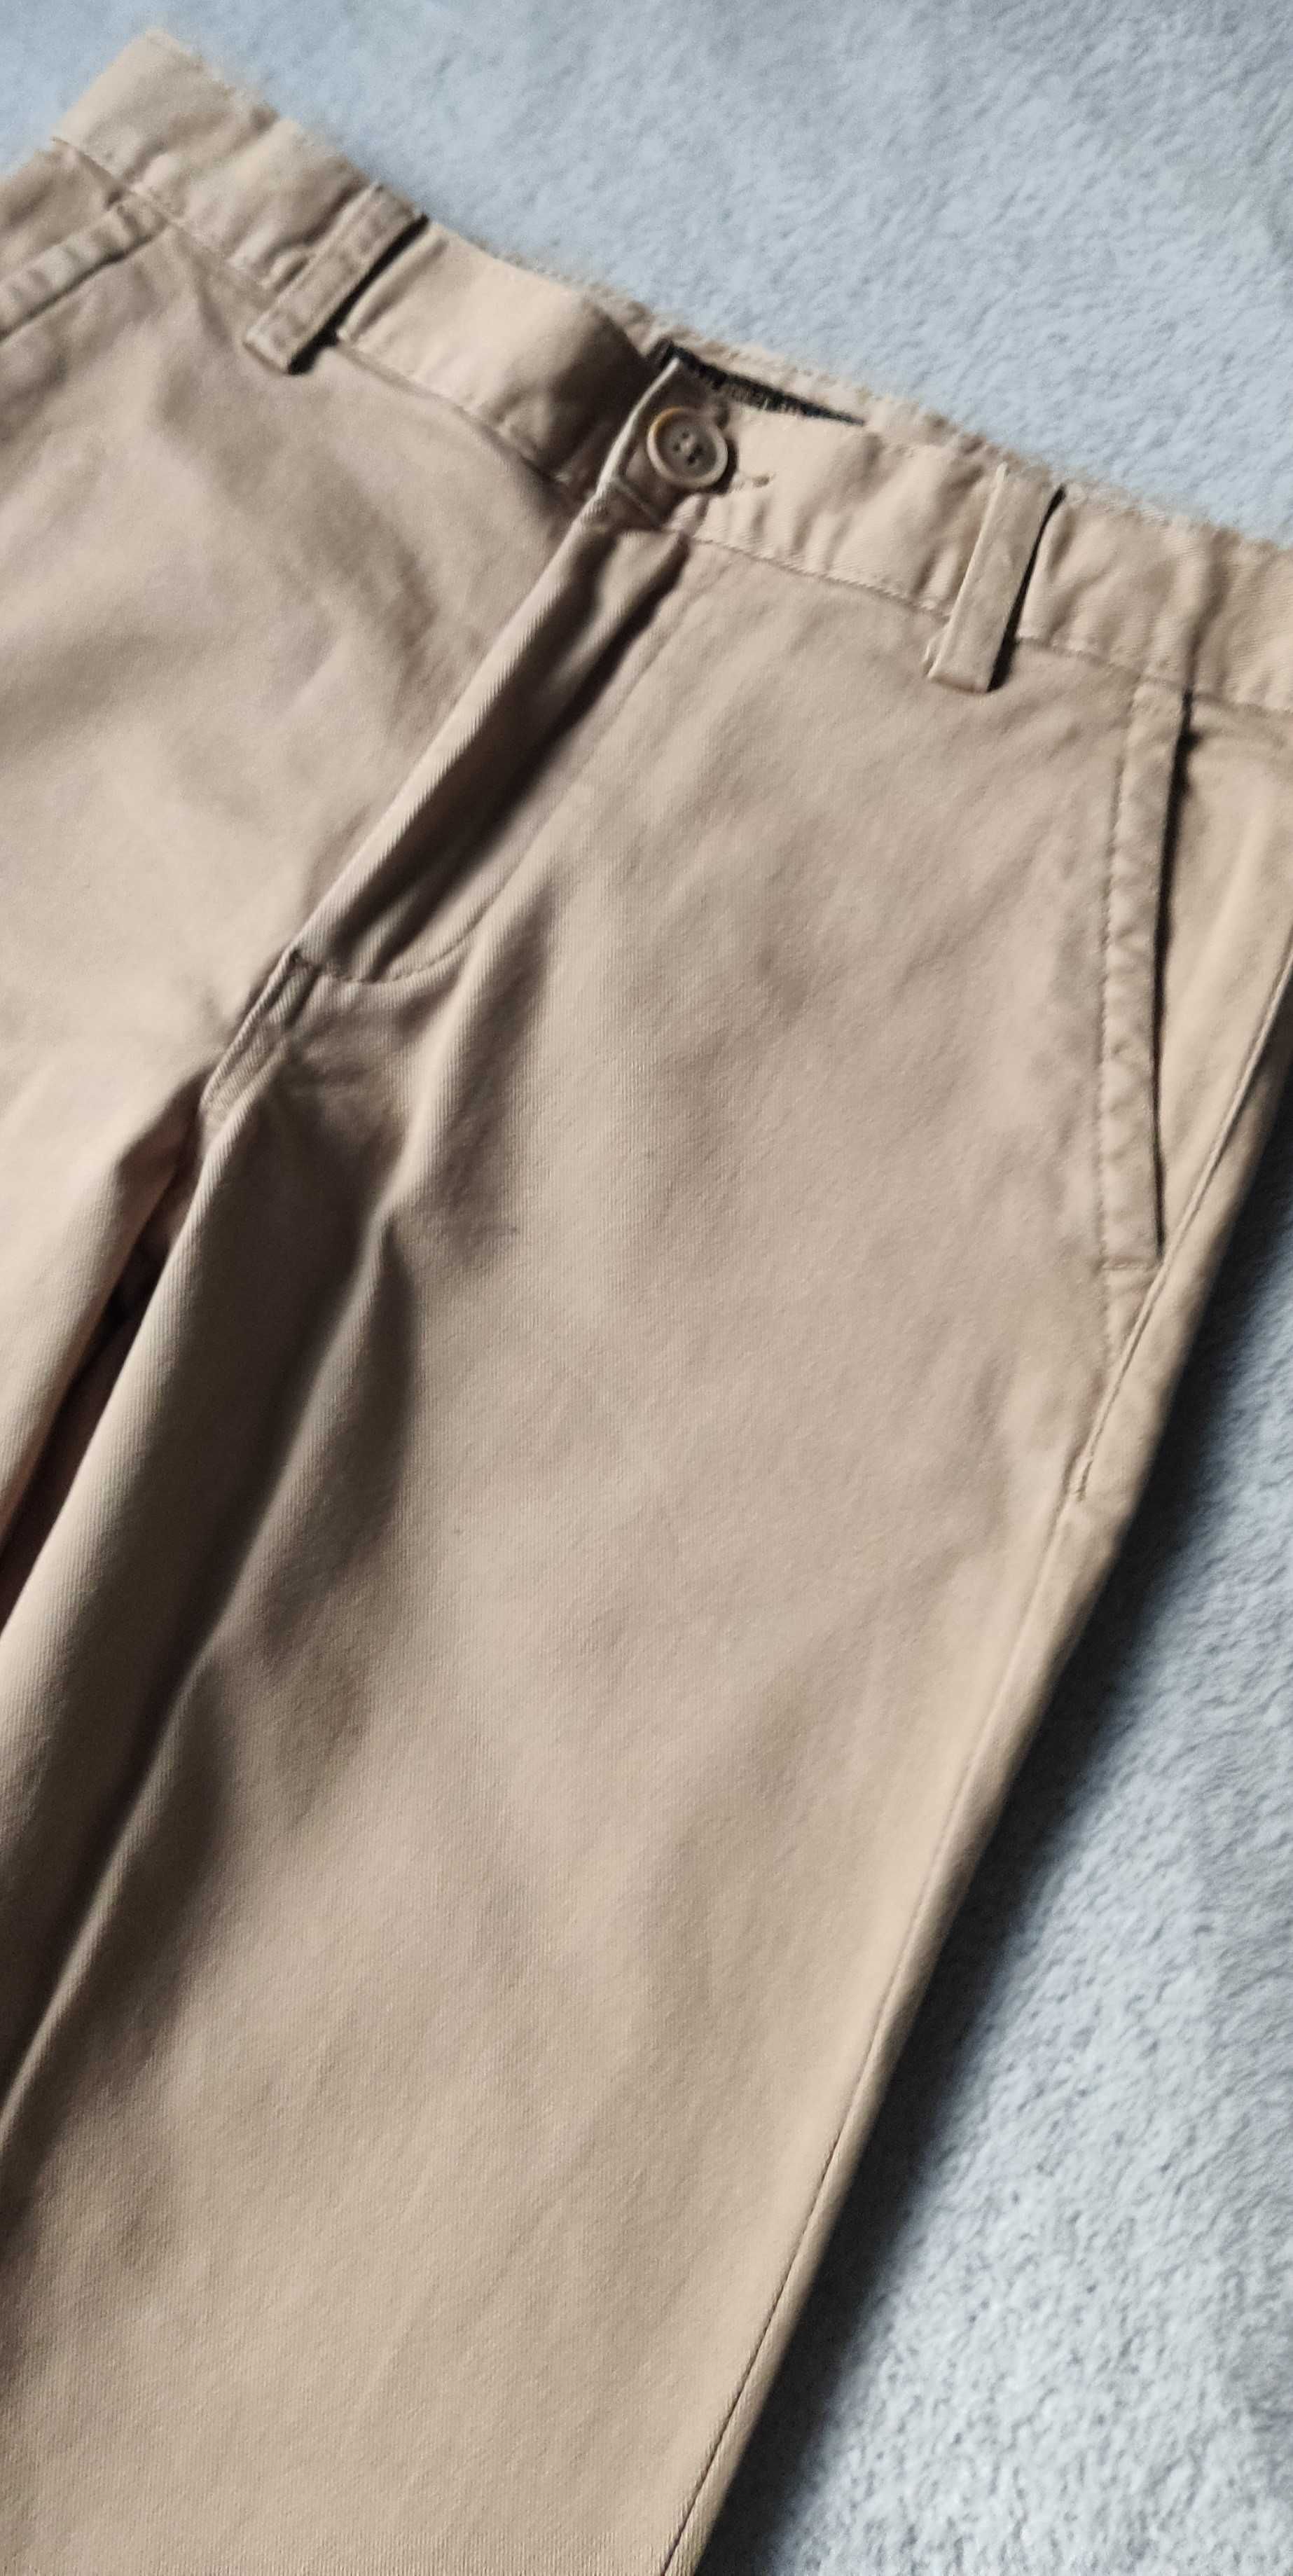 Spodnie H&M chłopięce CHINOS r. 134 beżowe NOWE